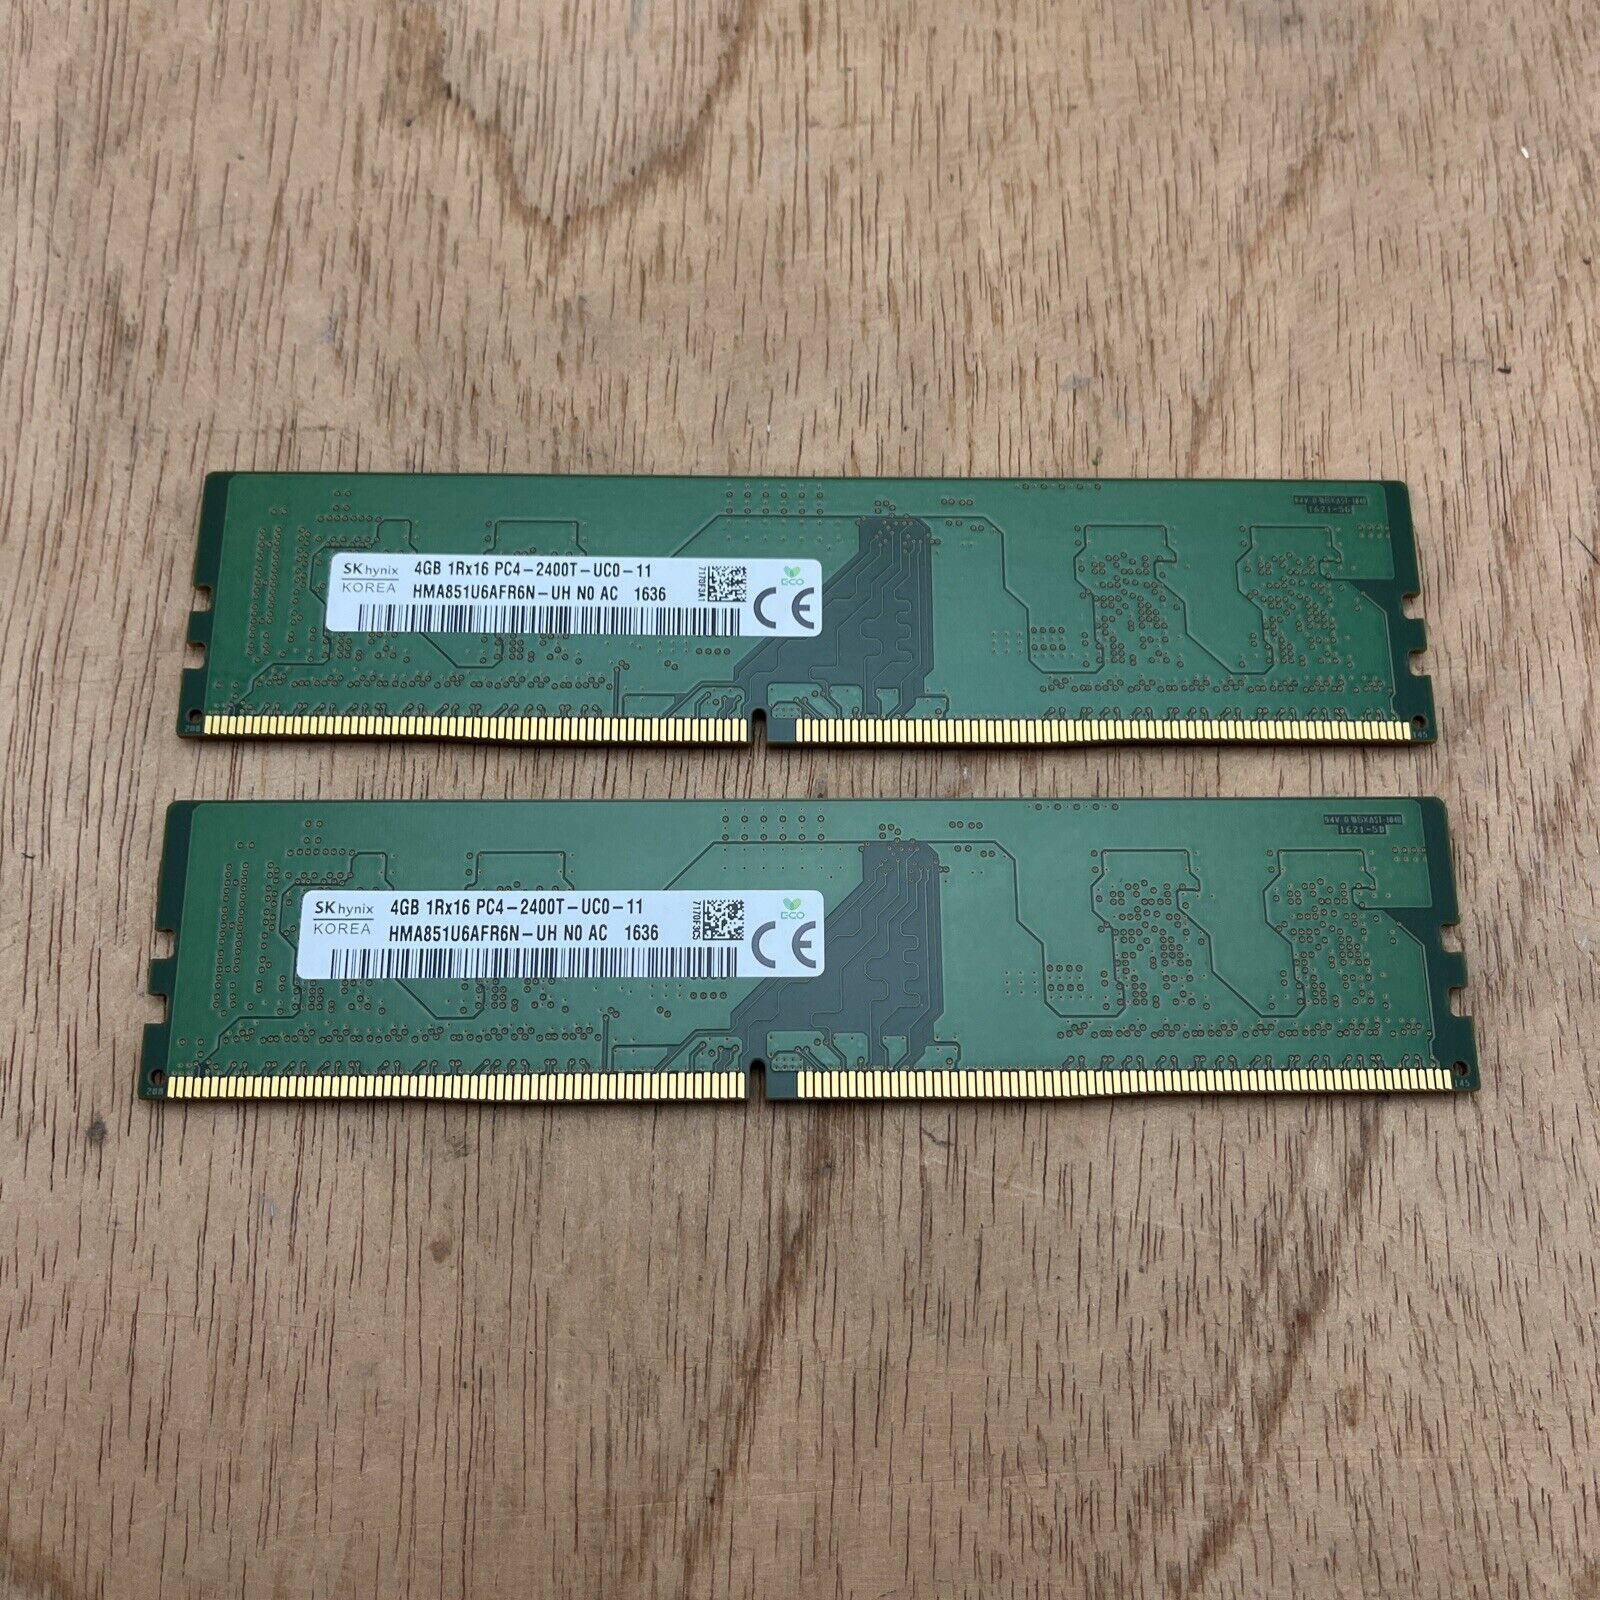 SKHynix PC4 1RX16 4GB 2400T DDR4 SDRAM HMA851U6AFR6N-UH